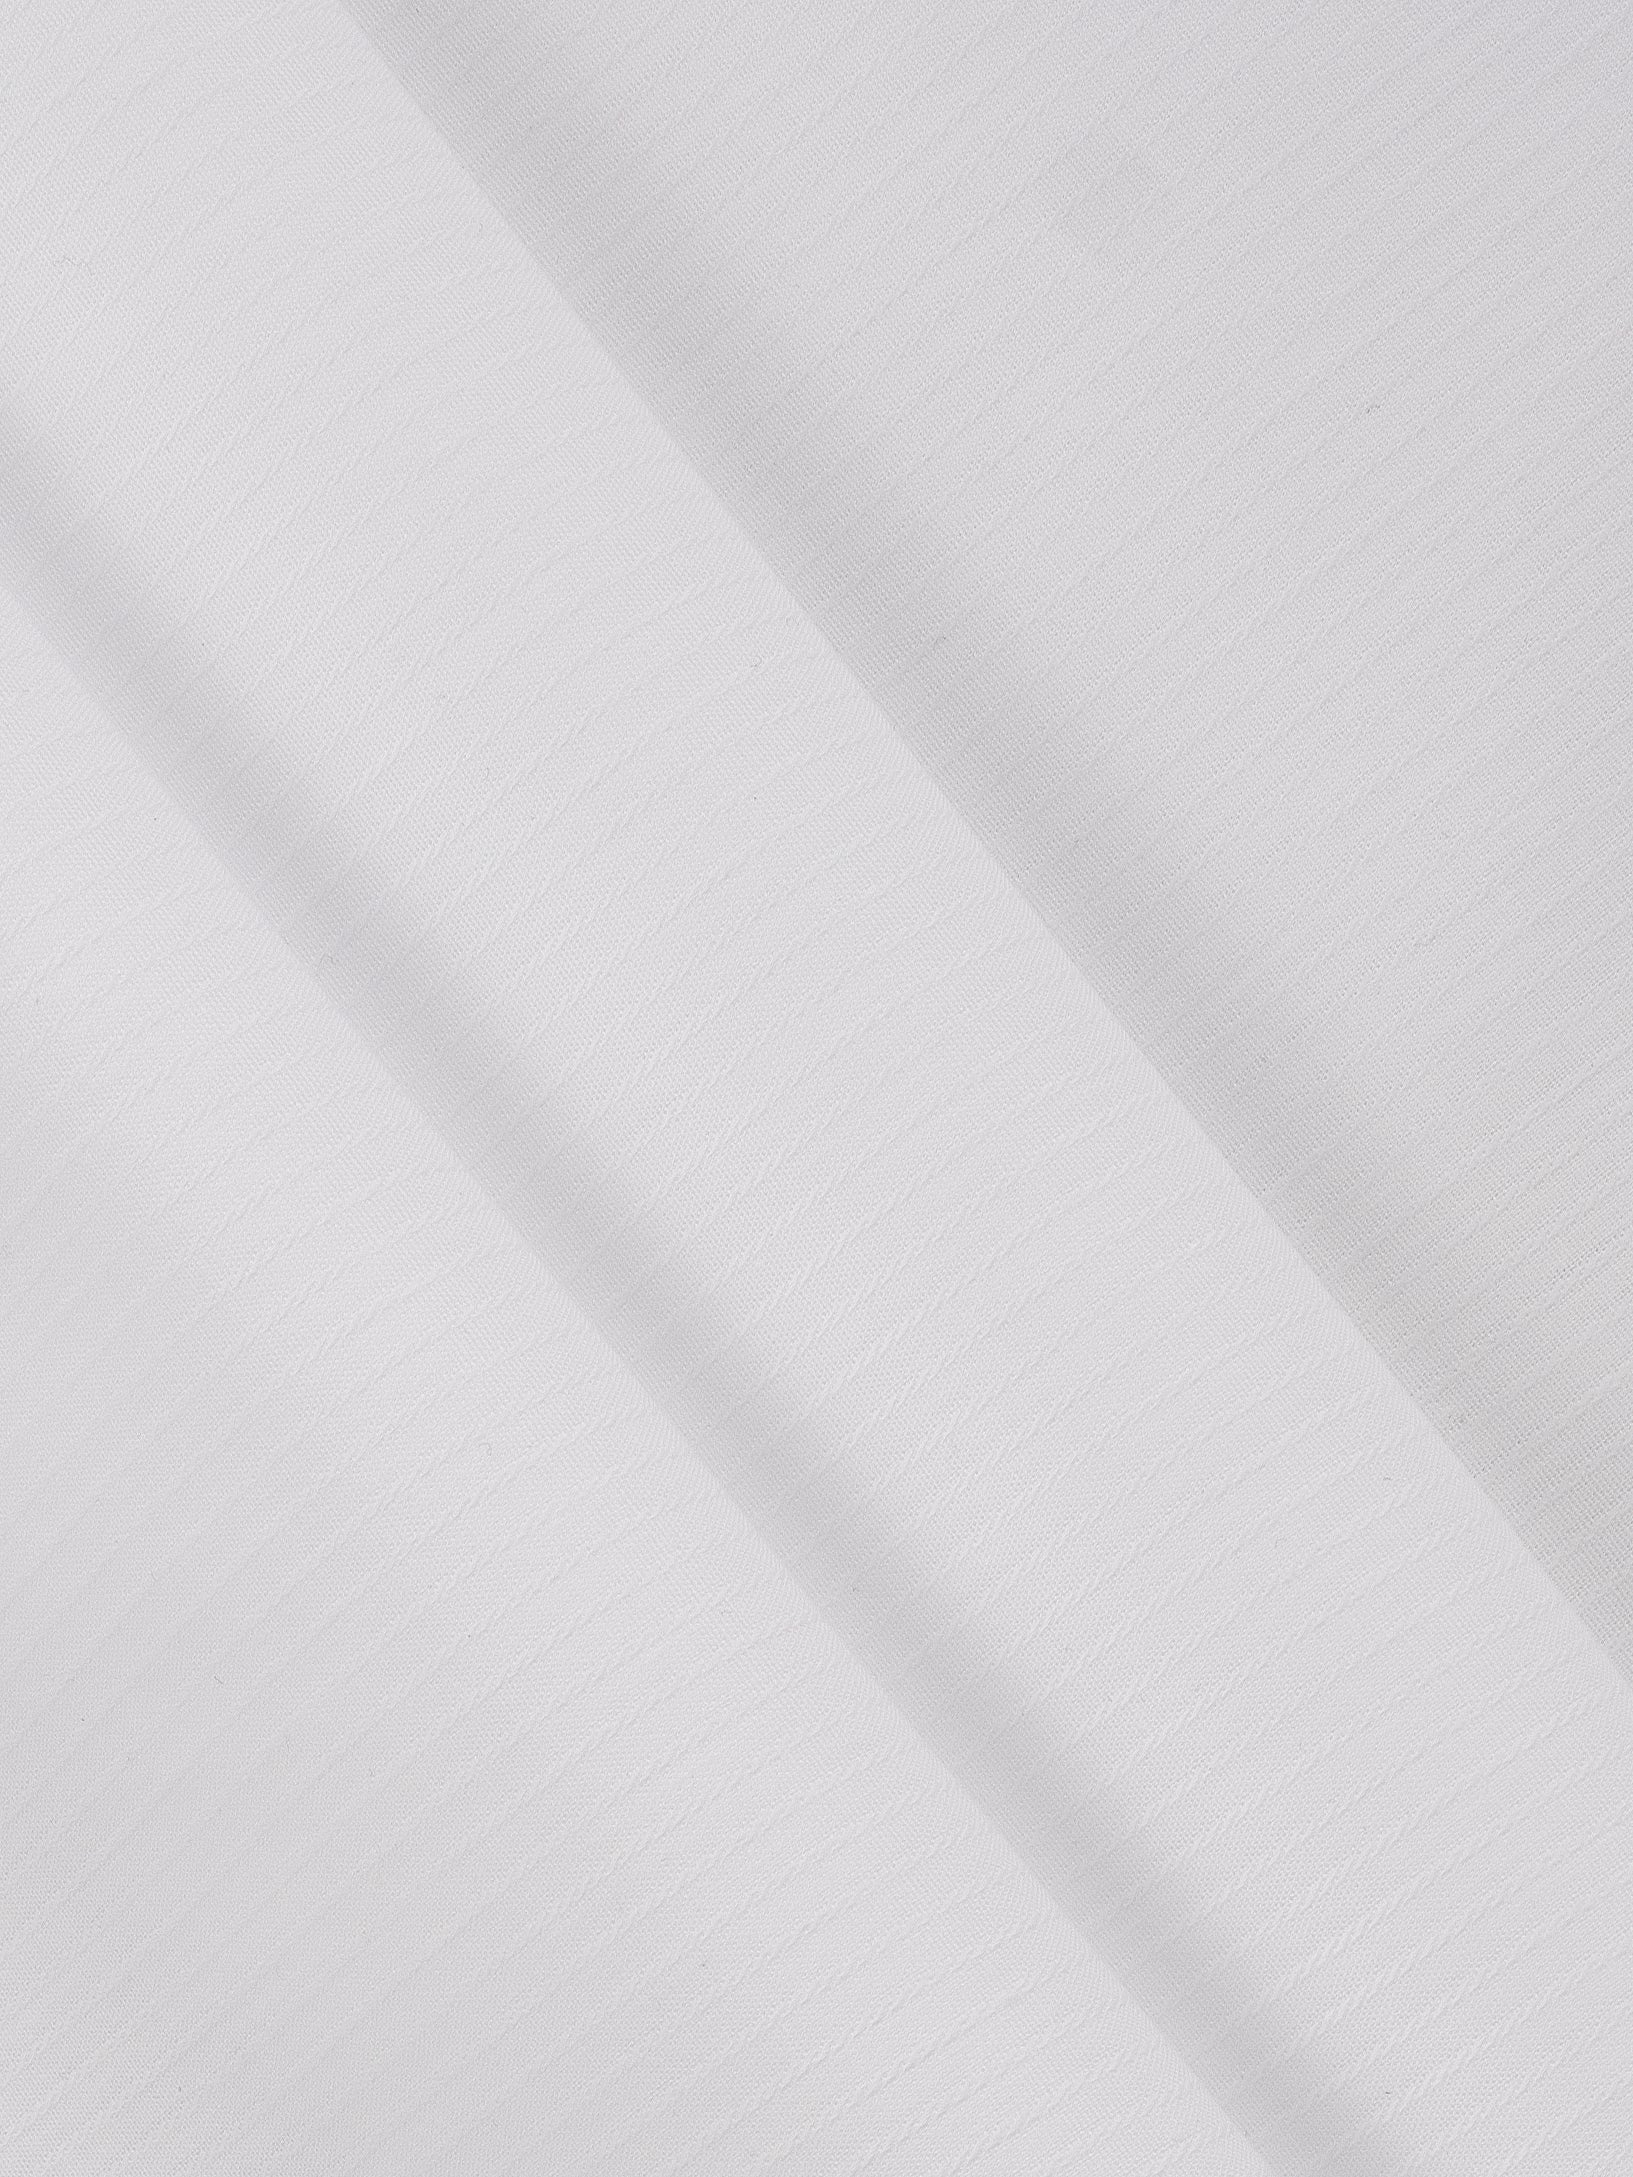 Luxury Cotton White Shirt Fabric 1002-Zoomview